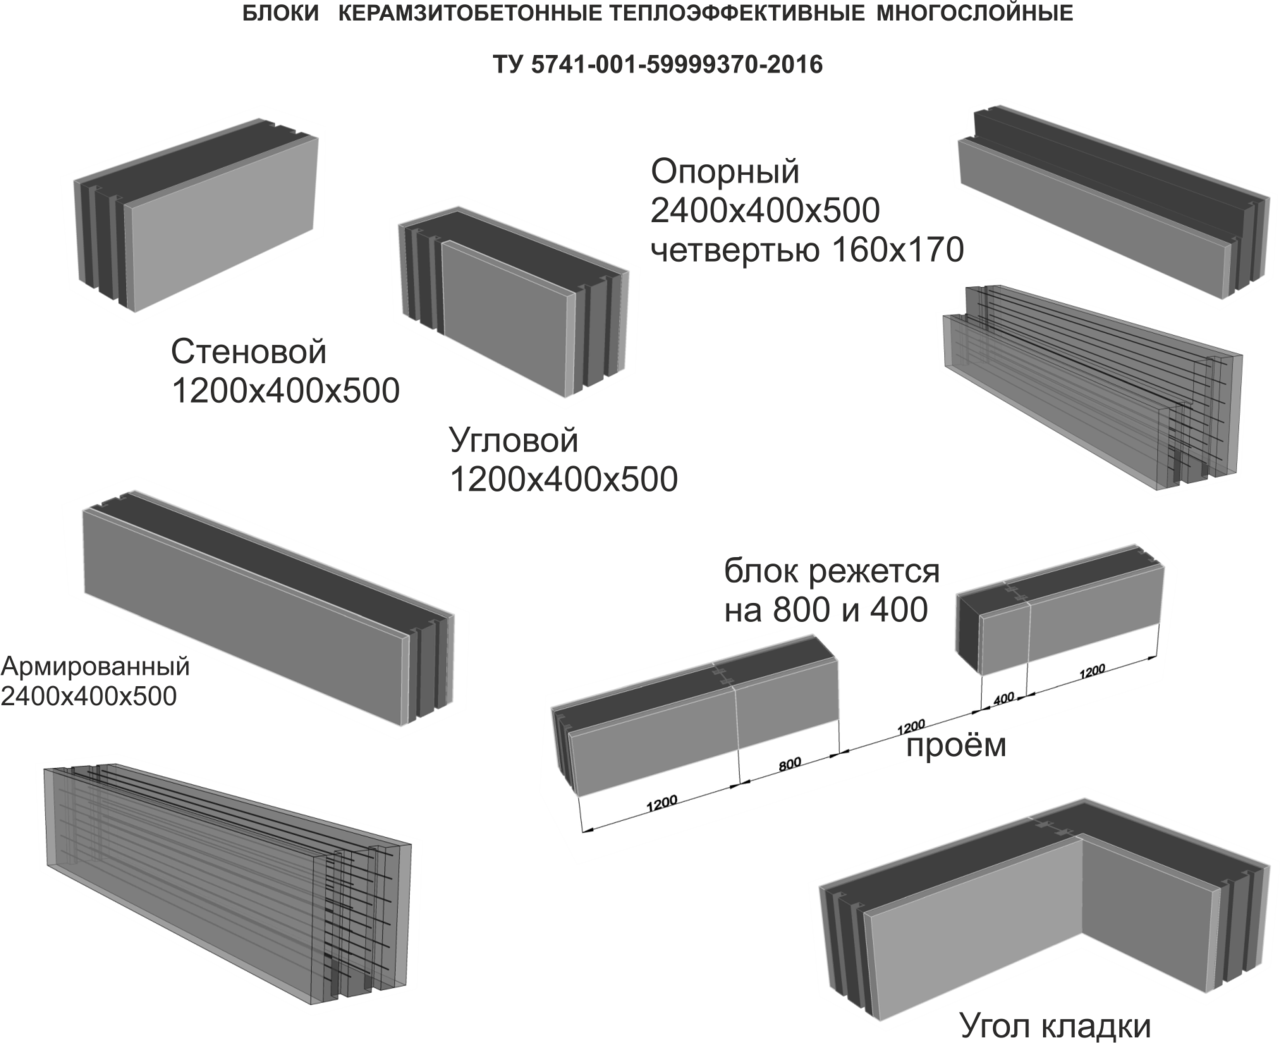 Размеры керамзитобетонных блоков и цены на них